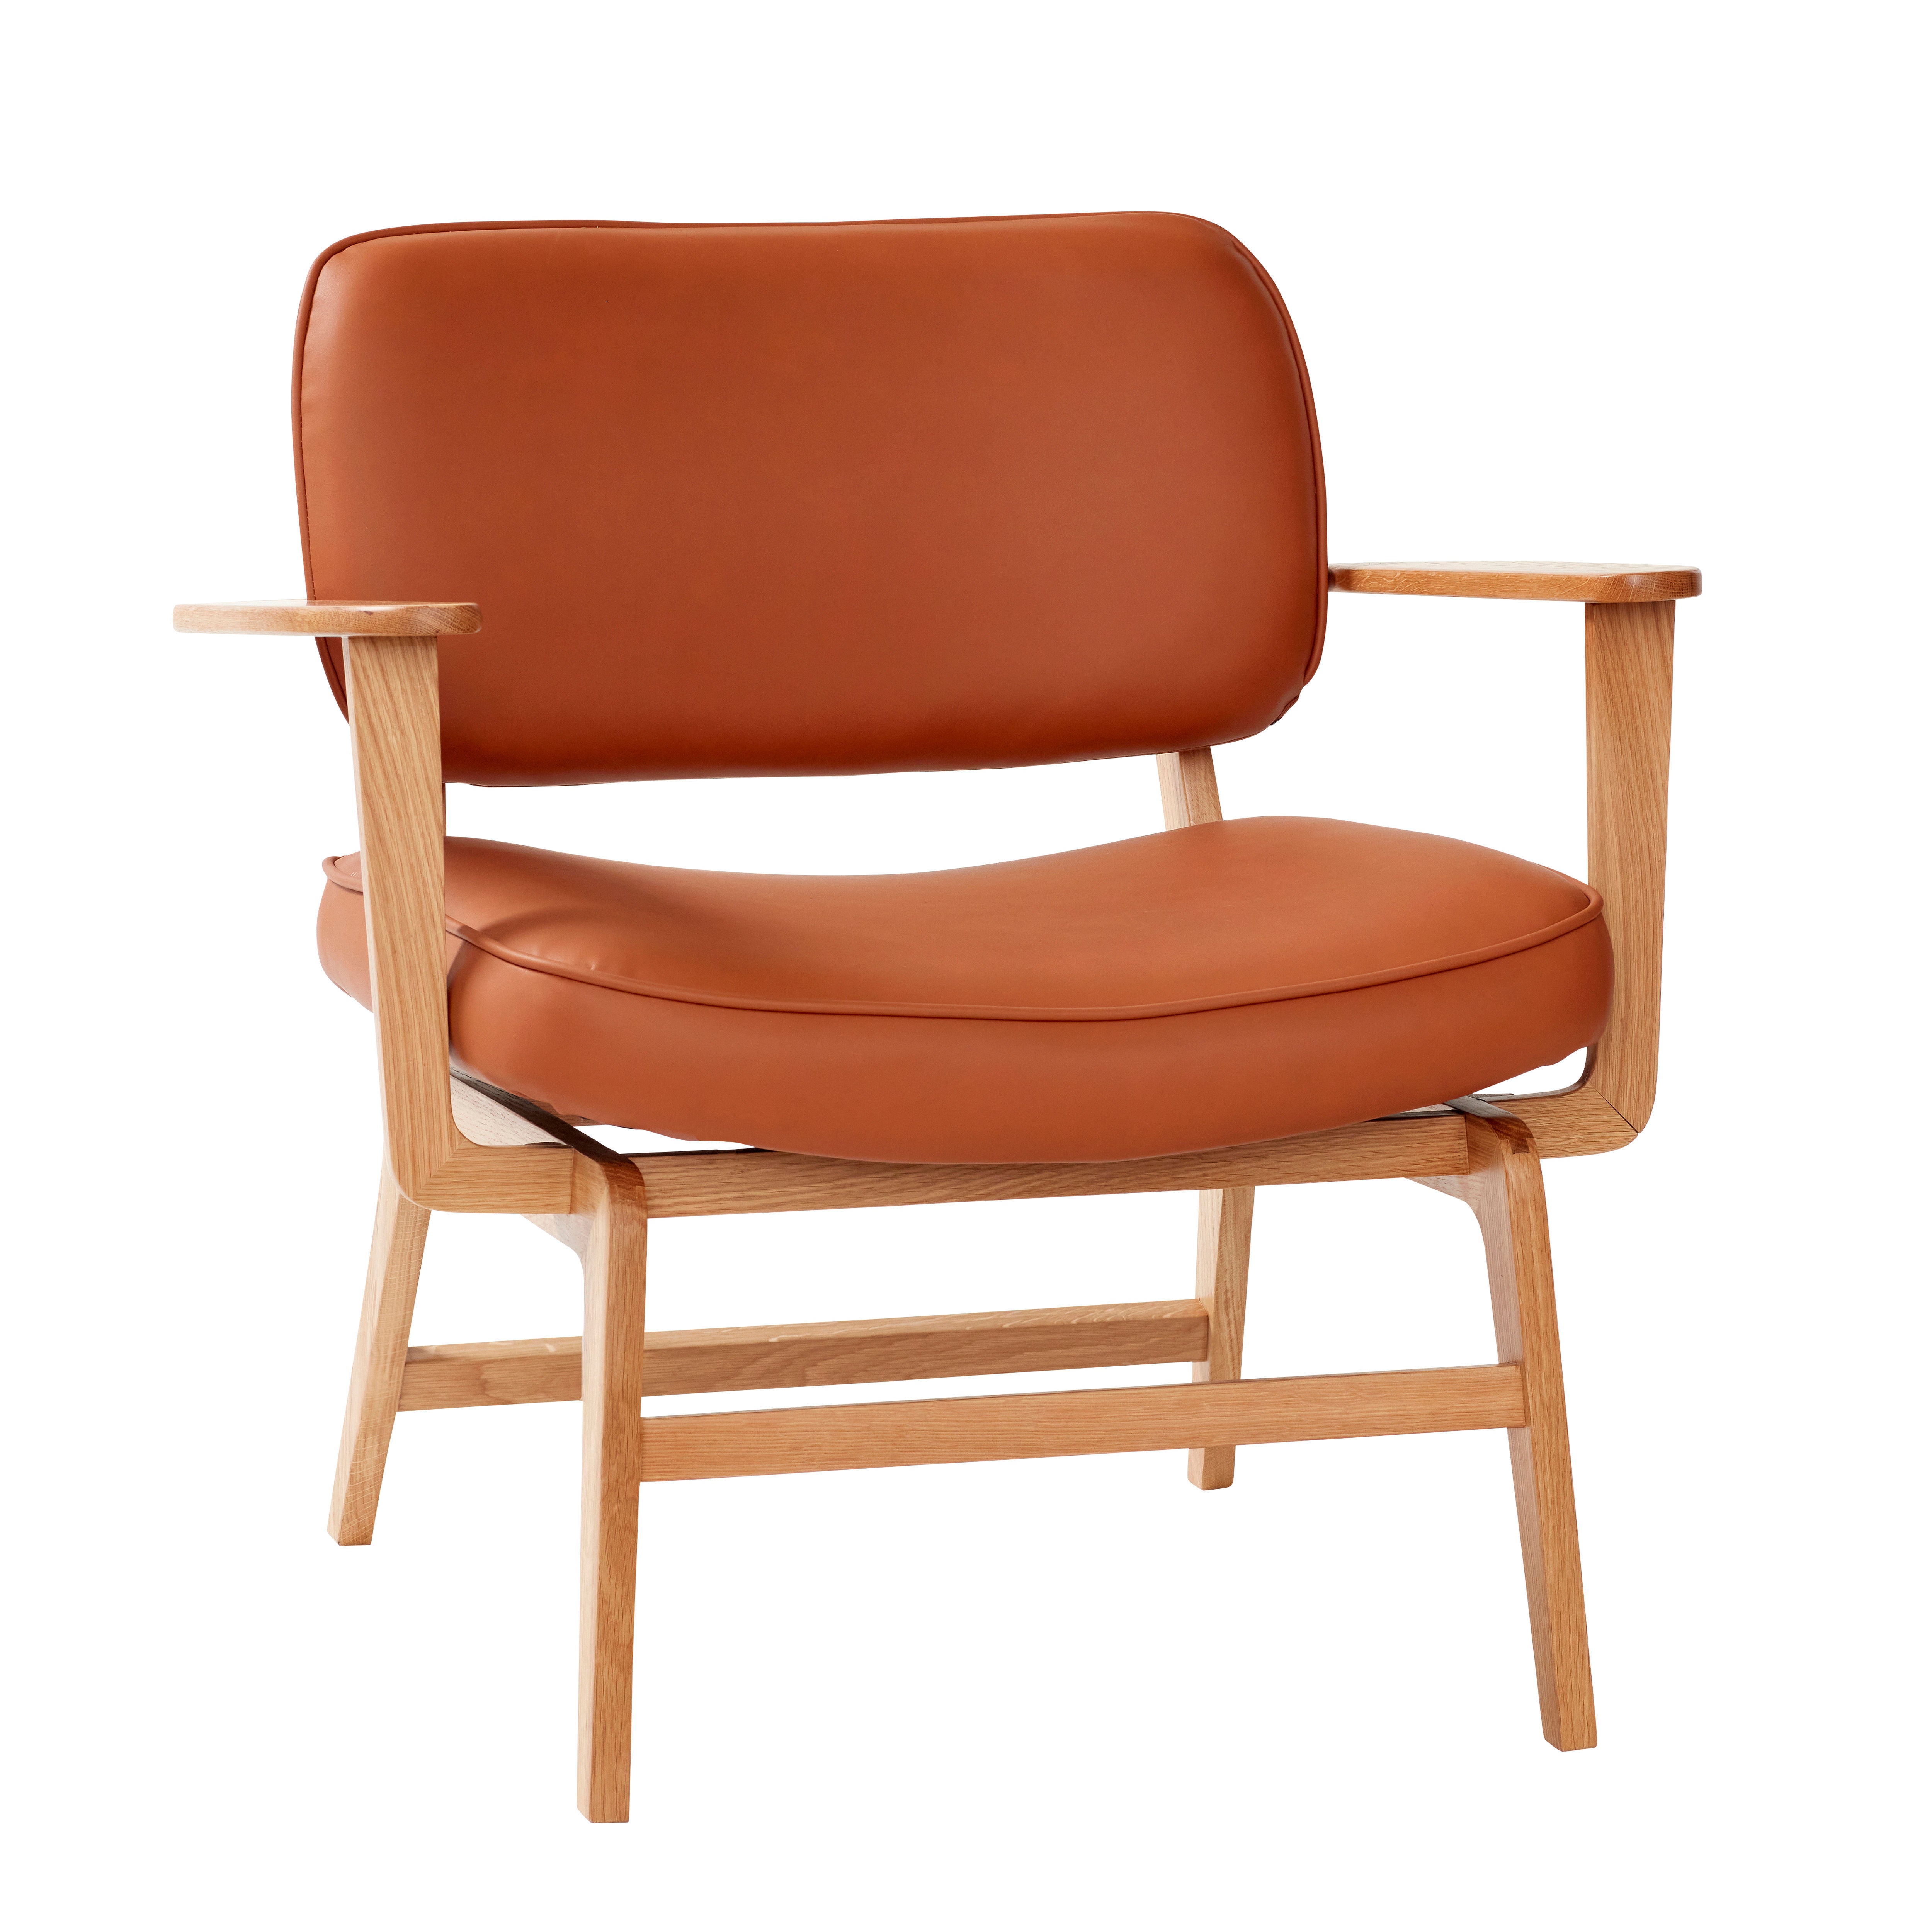 Der Haze Loungestuhl in Braun Naturfarben bietet Luxus, Stil und Komfort für ein modernes Zuhause.